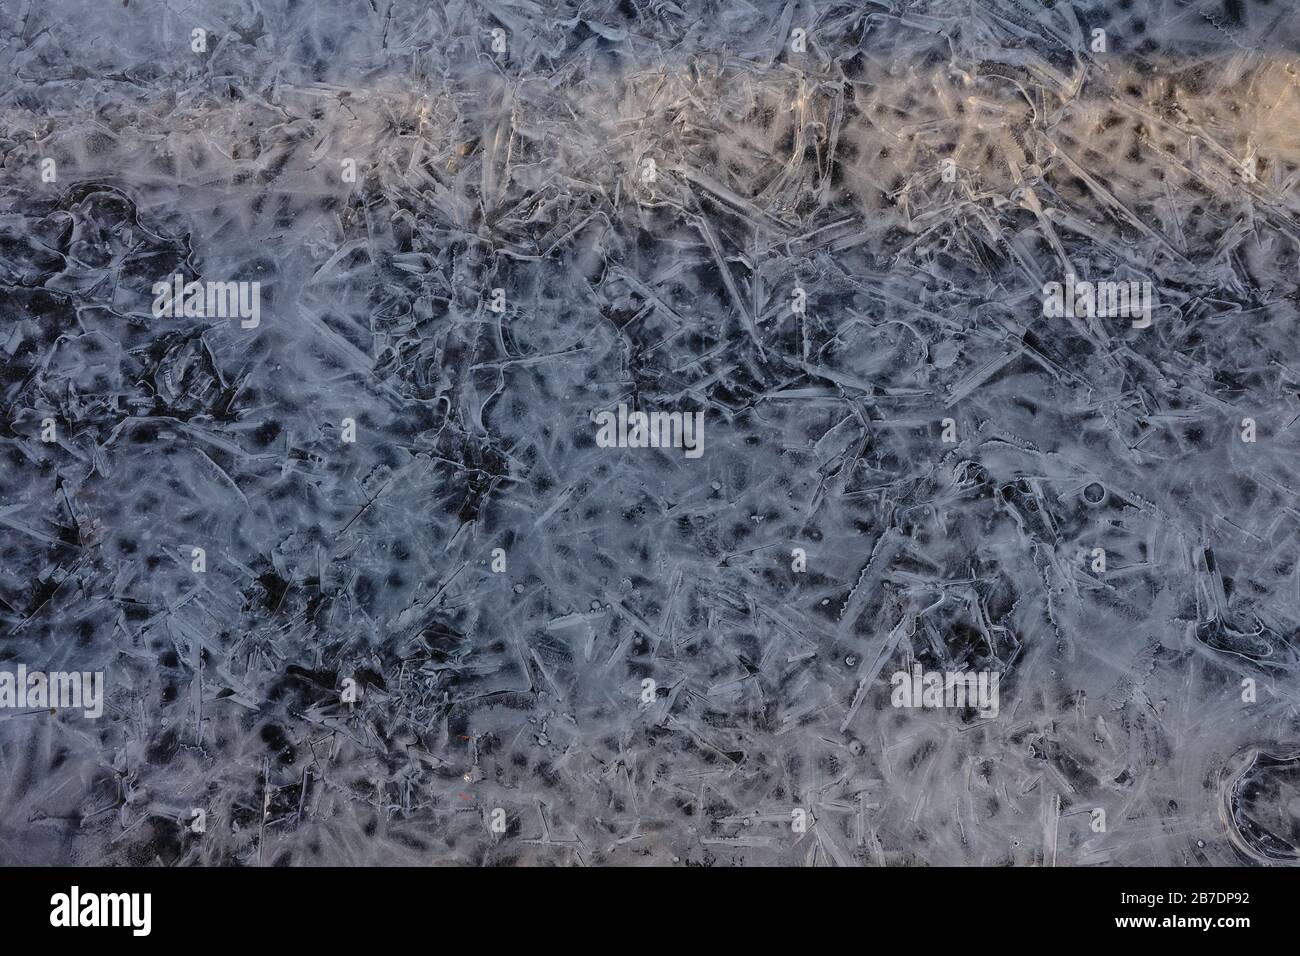 Motifs dans une flaque de glace gelée à la base d'un arbre dans le parc local. Ottawa (Ontario), Canada. Banque D'Images